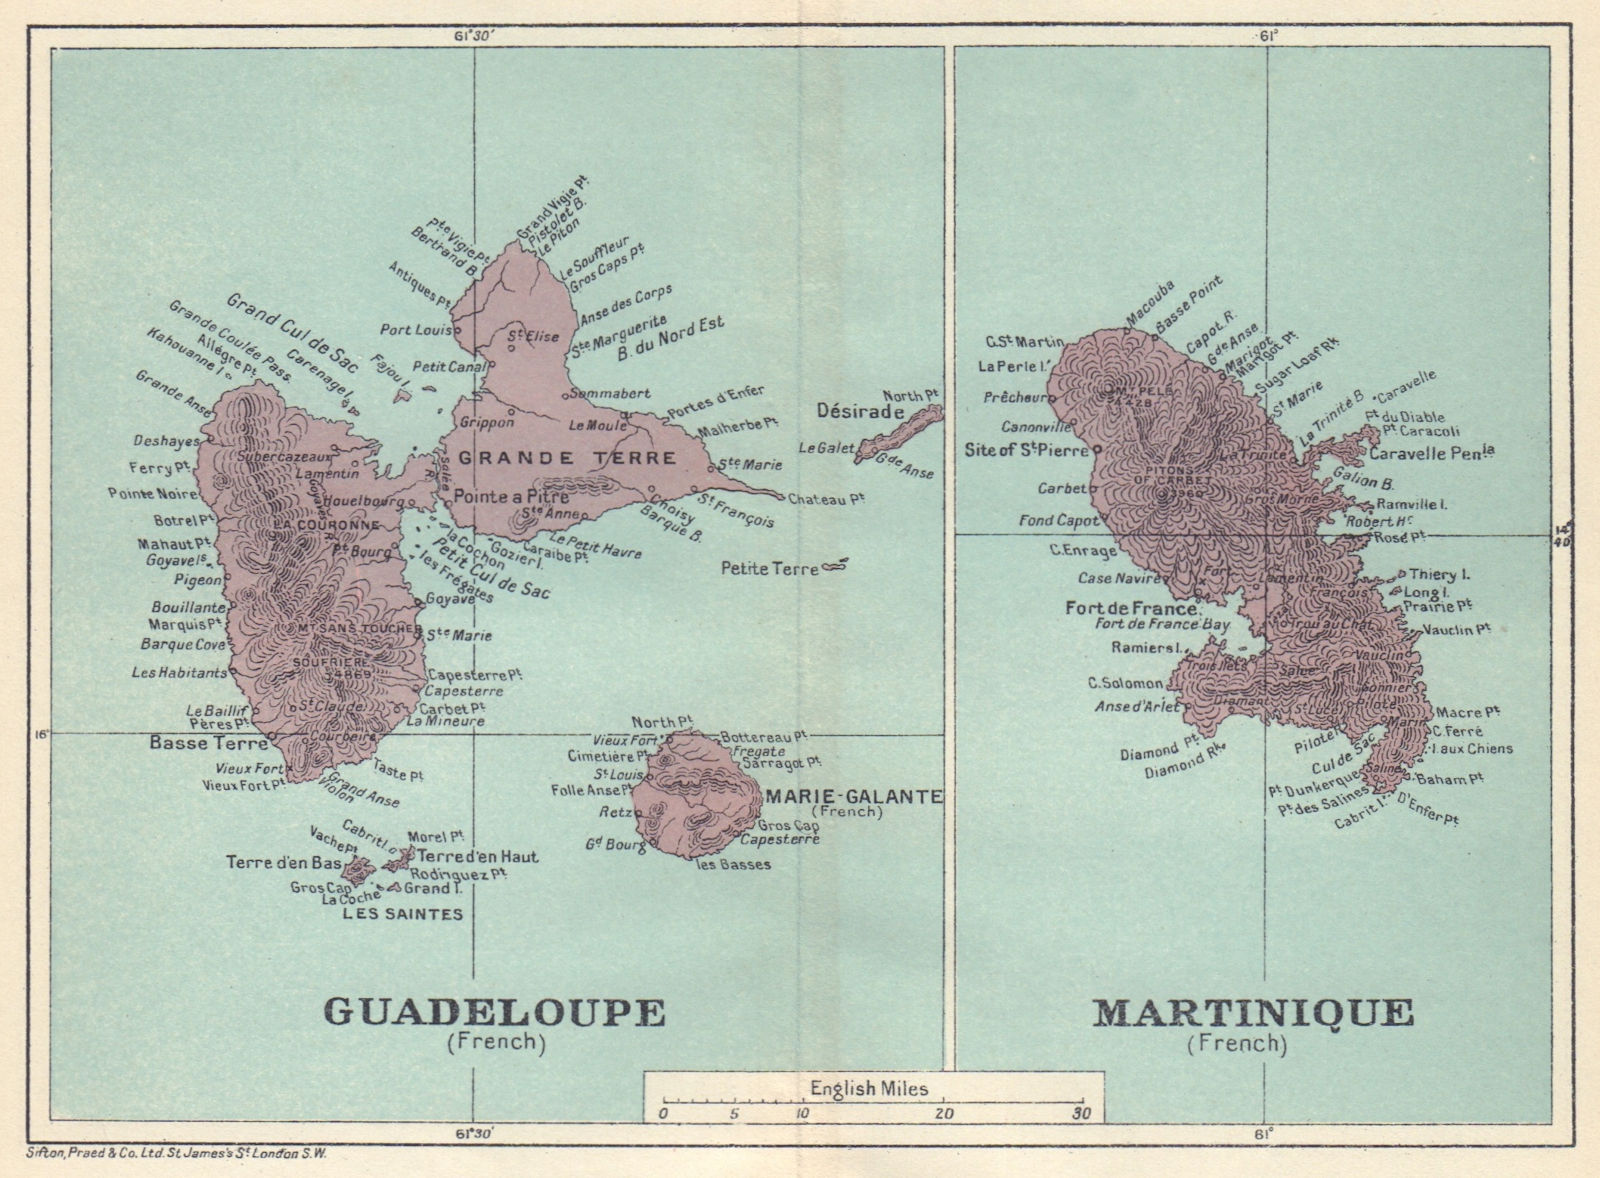 ANTILLES FRANÇAISES. Martinique Guadeloupe. French West Indies vintage map 1923